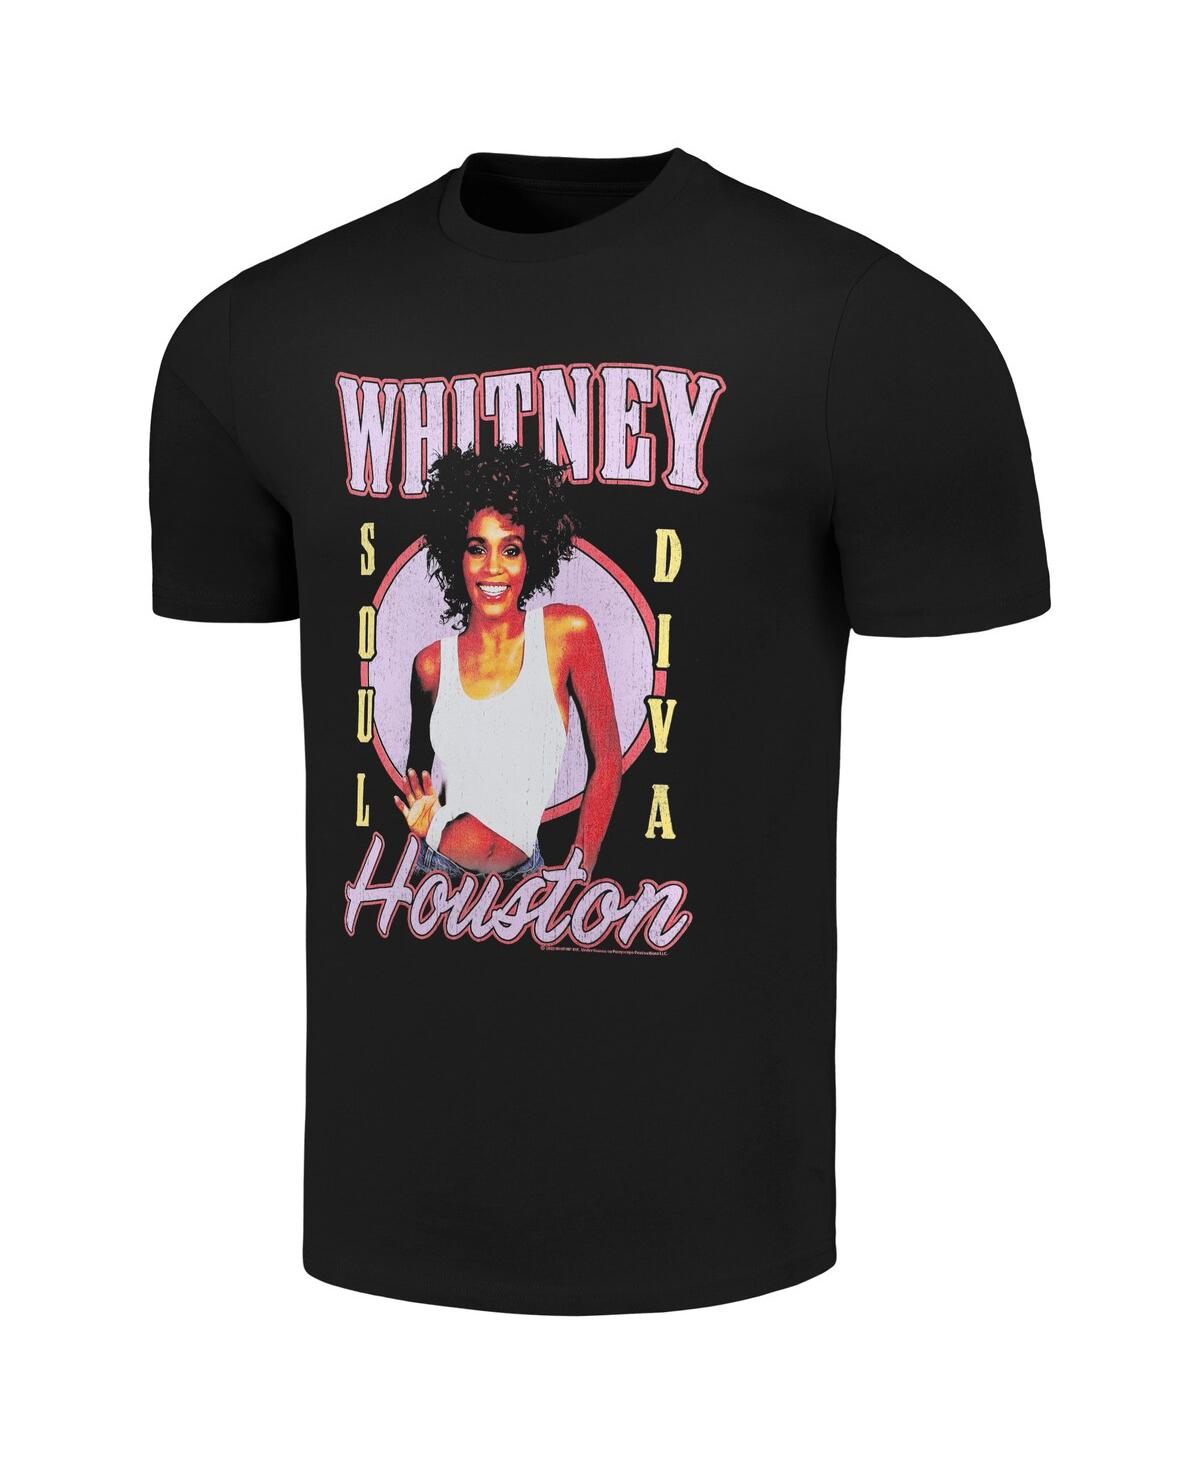 Shop American Classics Men's Black Whitney Houston Soul Diva T-shirt